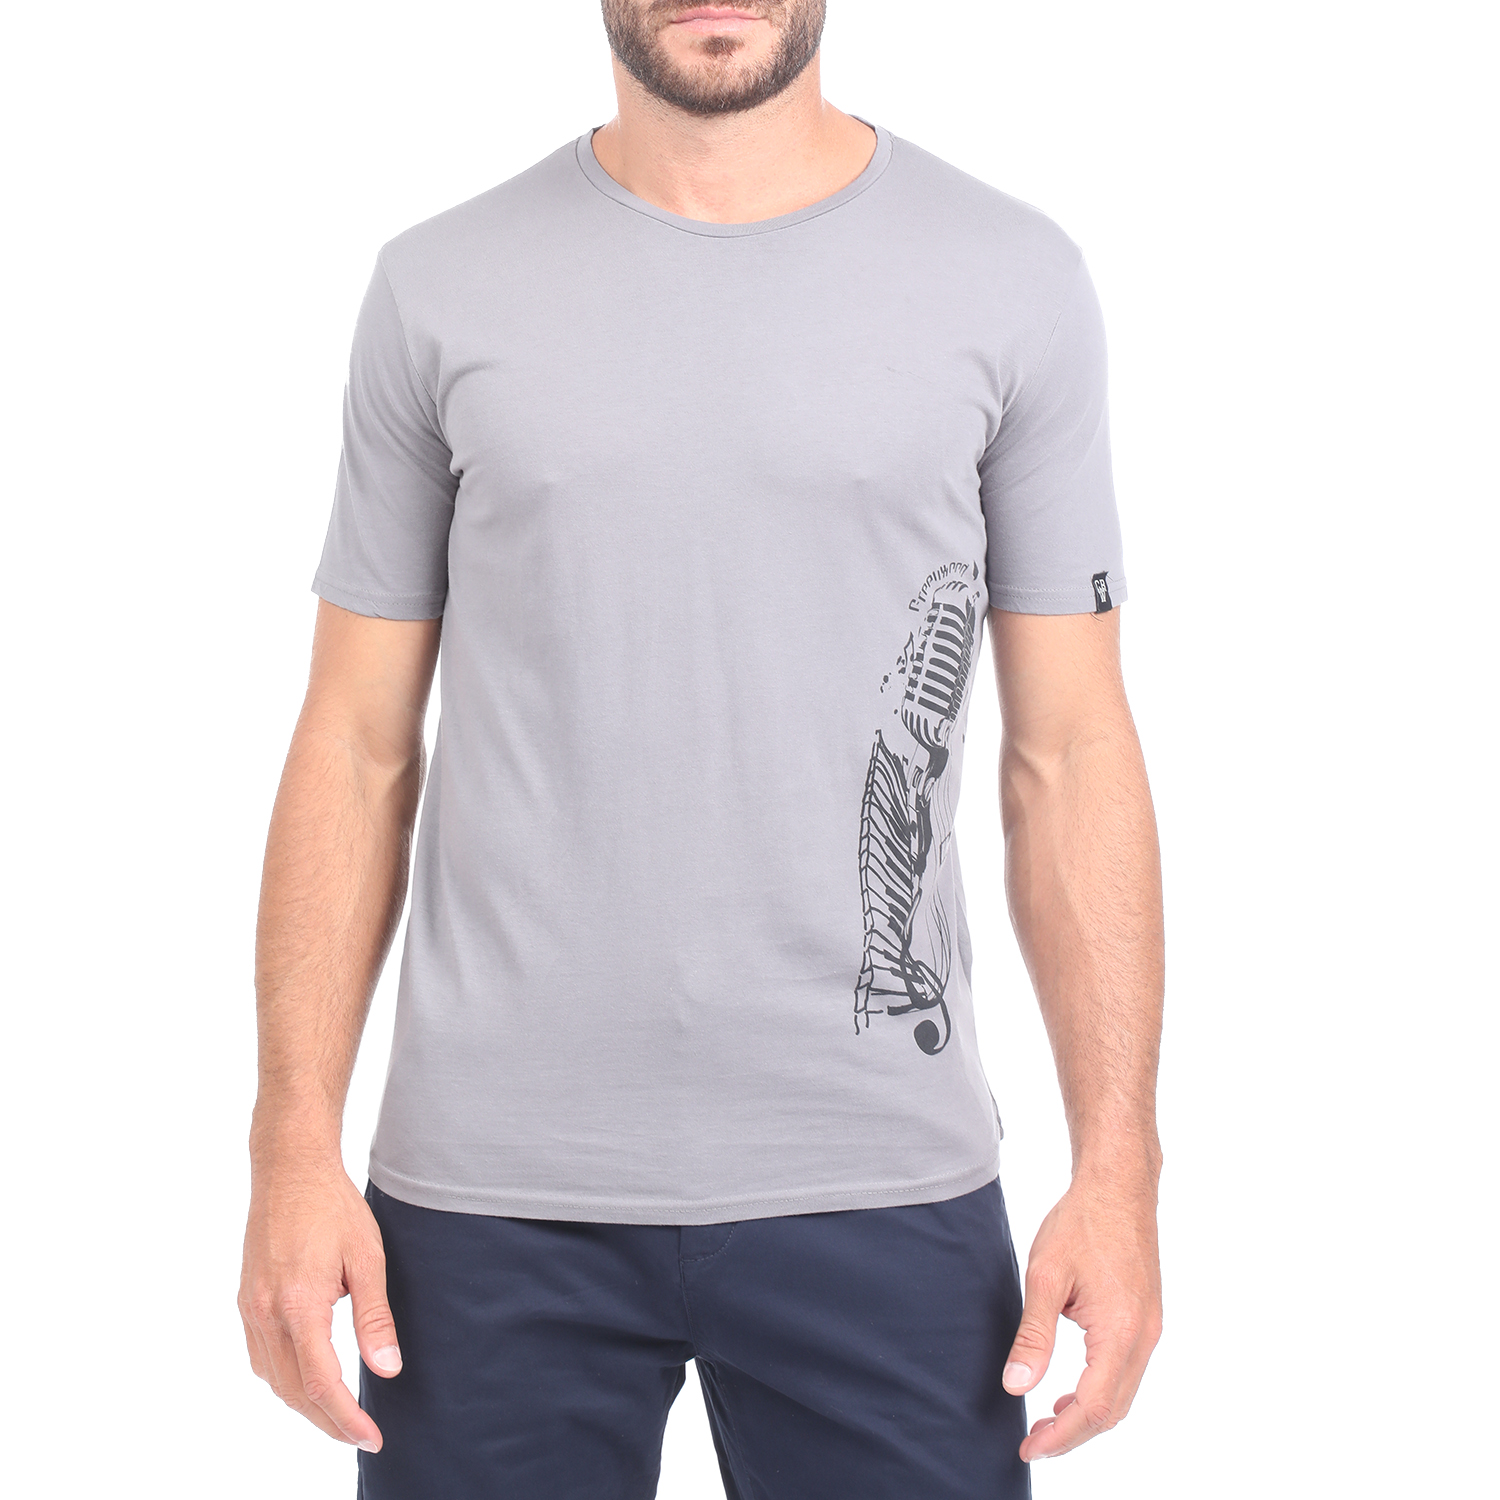 Ανδρικά/Ρούχα/Μπλούζες/Κοντομάνικες GREENWOOD - Ανδρική κοντομάνικη μπλούζα GREENWOOD γκρι